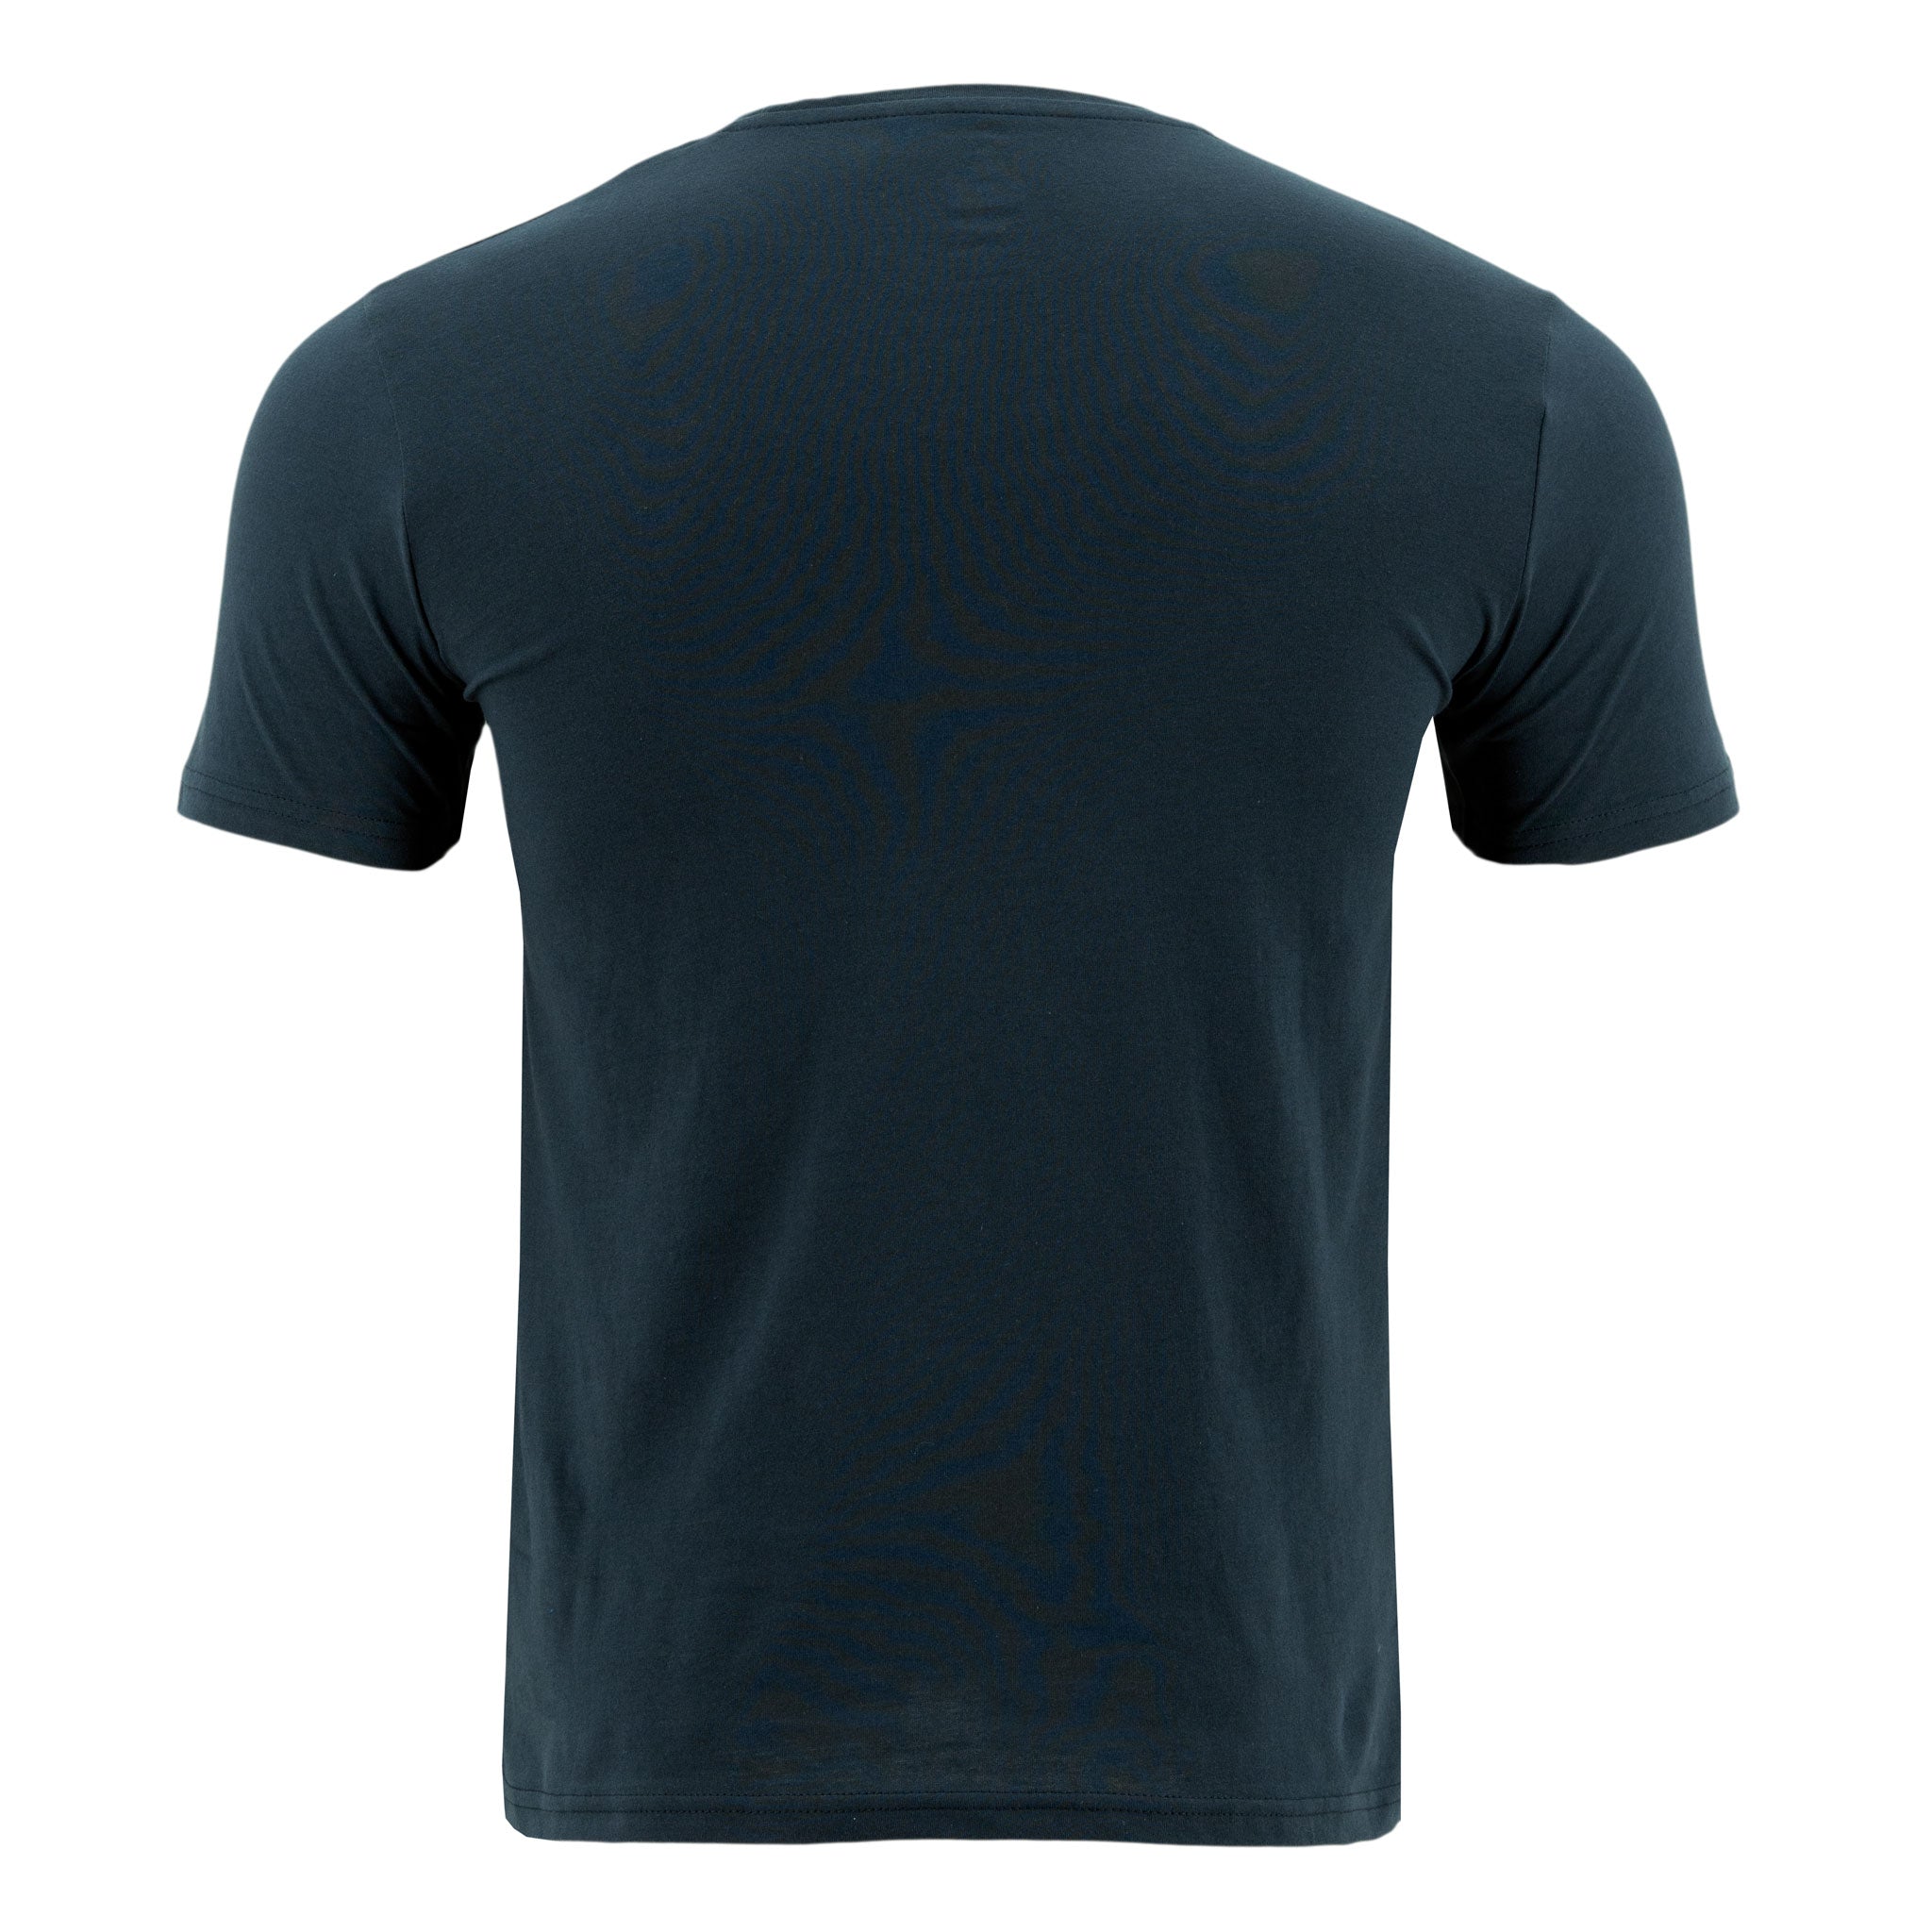 camiseta-1492-mangas-cortas-estampada-p-caballero-13